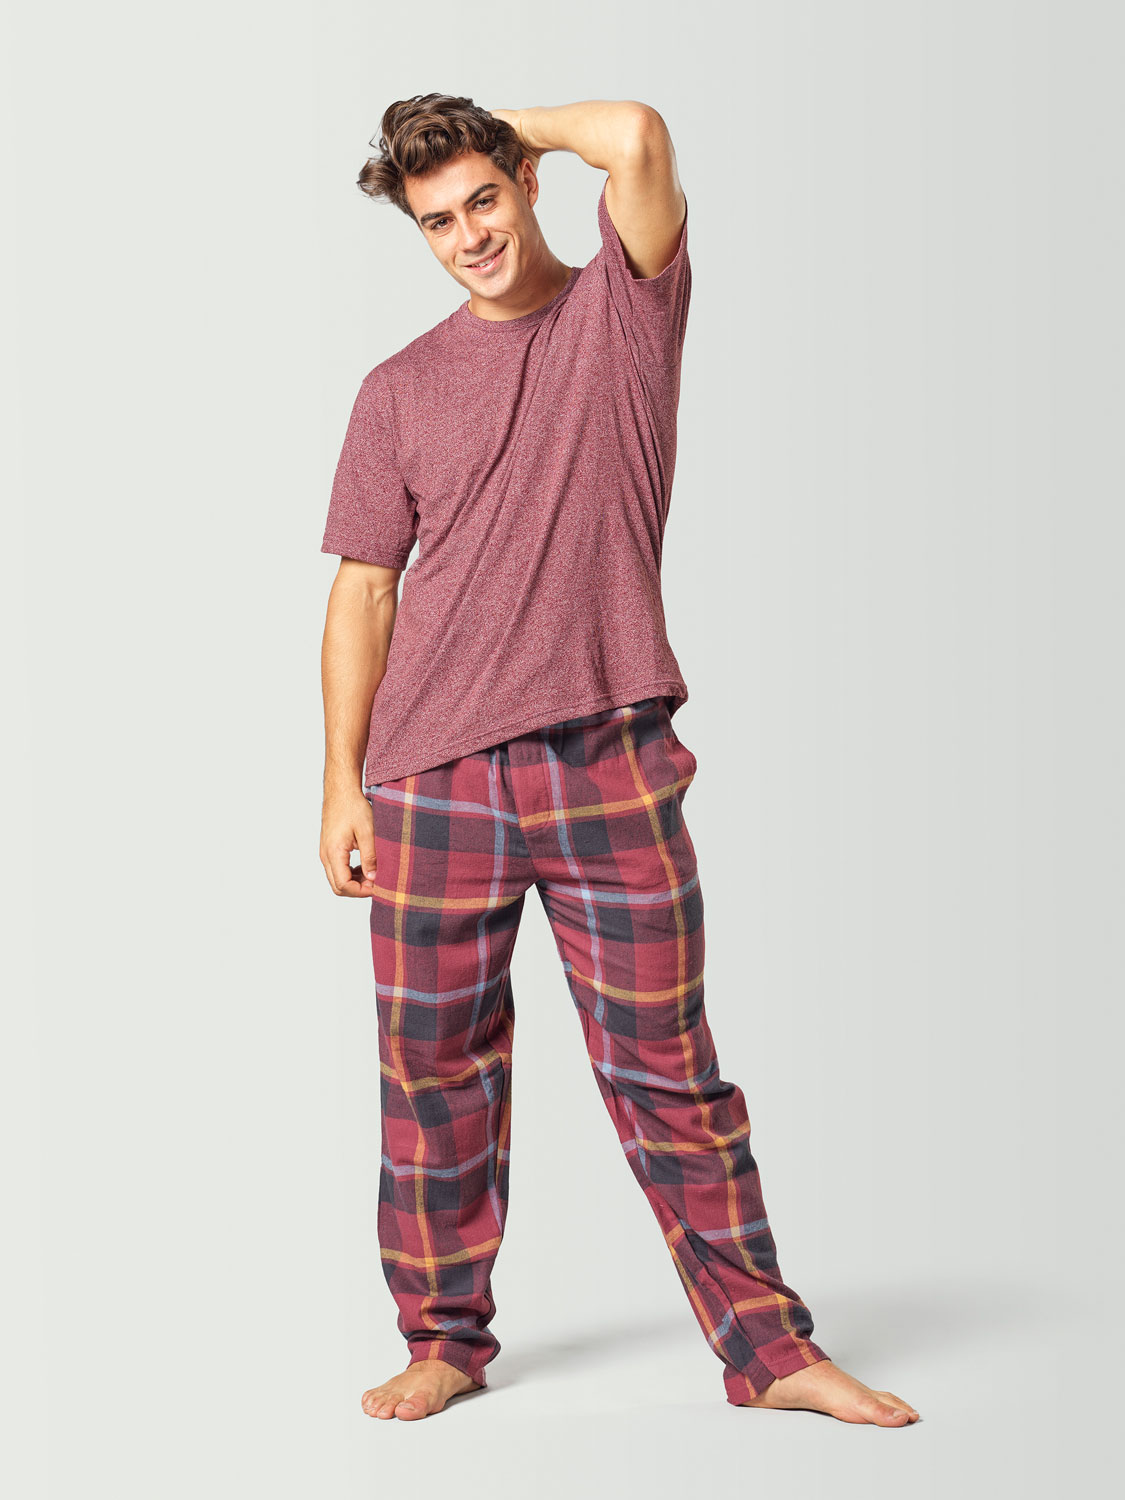 Explícitamente Pelmel Conciso Pijama para hombre con camiseta de manga corta roja y pantalón a cuadros  rojo y negro | Pijamas Babelo